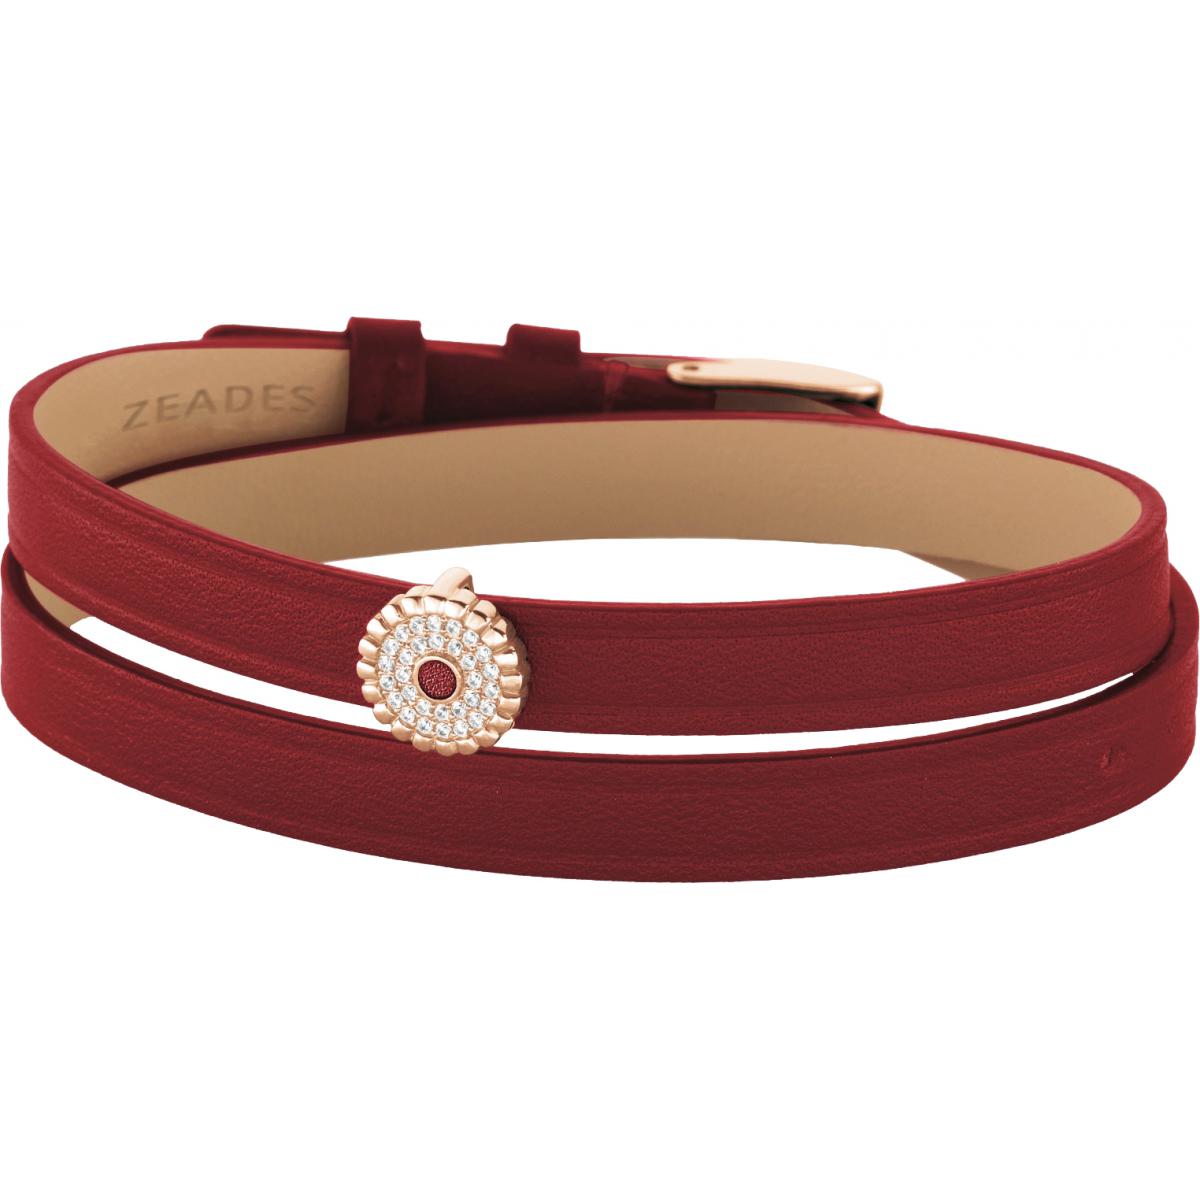 Bracelet Zeades Sbc01056 - Bracelet Cuir Rouge Cristaux Femme